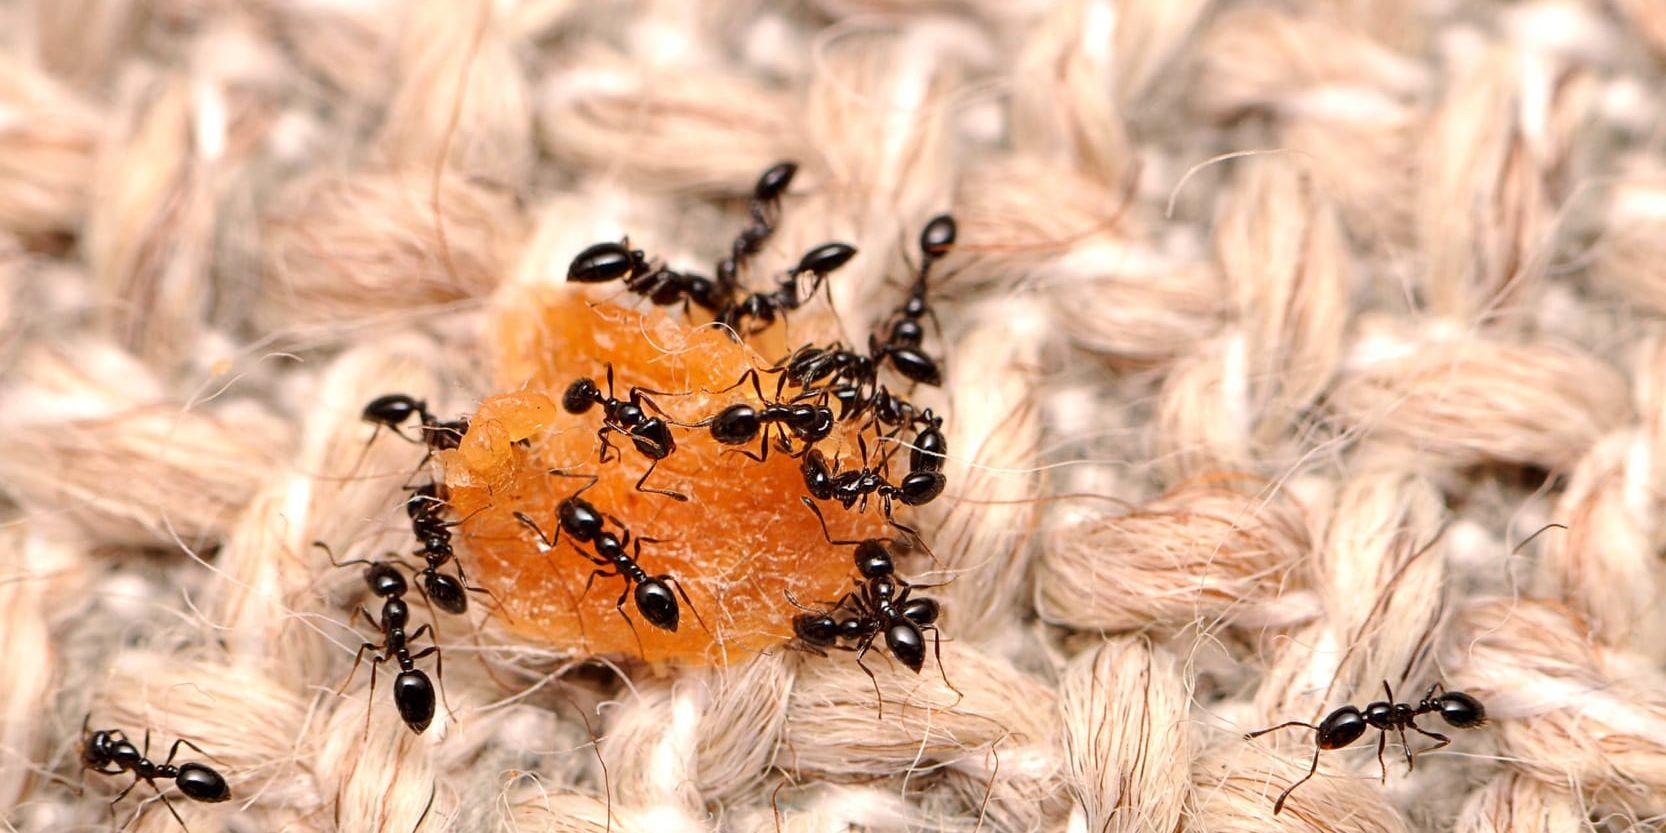 Myror lever tätt tillsammans, som myrorna på bilden som festar loss på en matsmula. Risken att smittsamma sjukdomar ska spridas i kolonin är stor. Arkivbild.